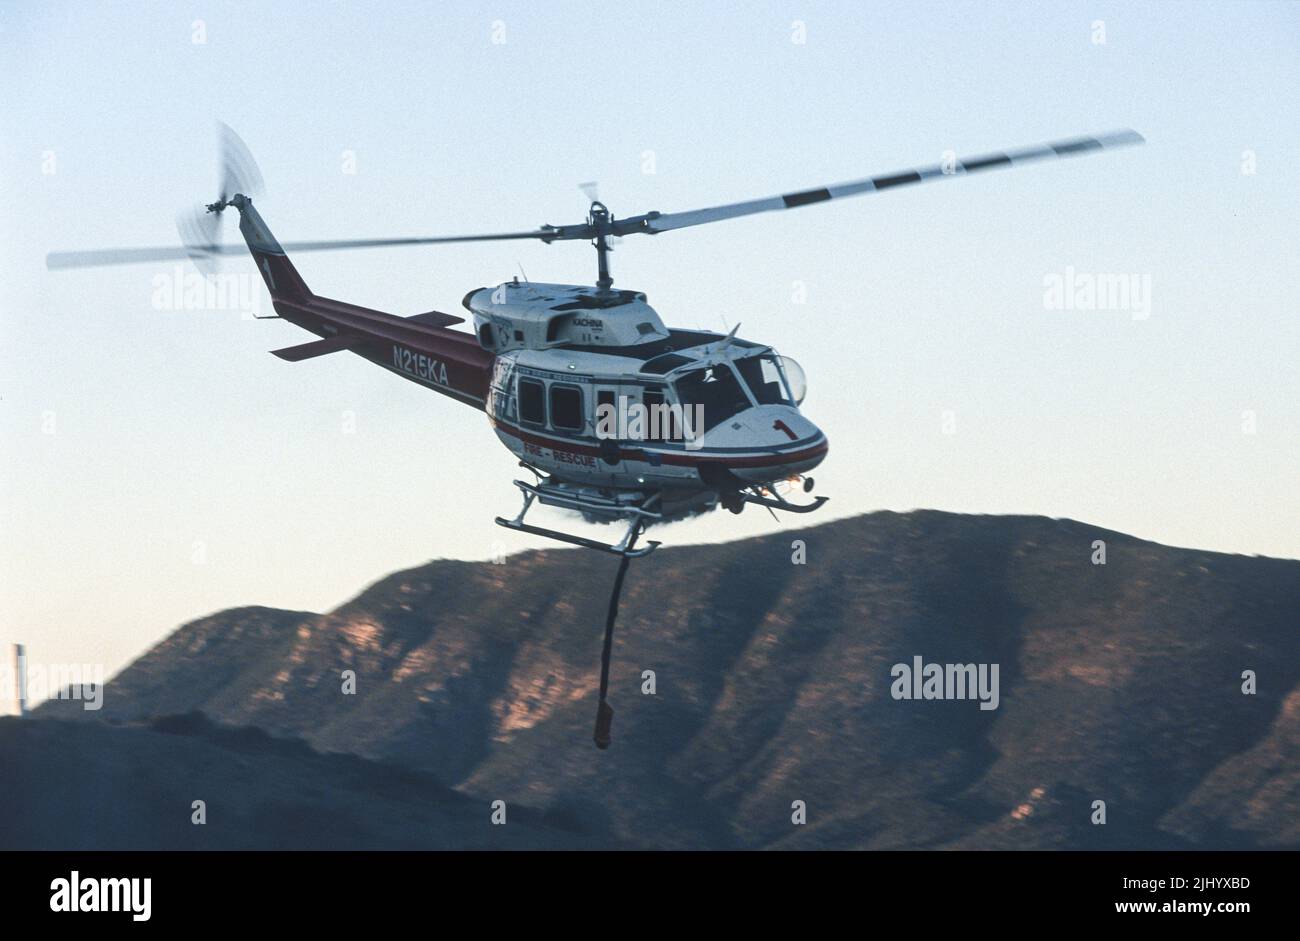 L'hélicoptère régional de secours incendie de San Diego de Kachina aviation fait une goutte d'eau sur un feu de forêt (brosse) en fonctionnement. Banque D'Images